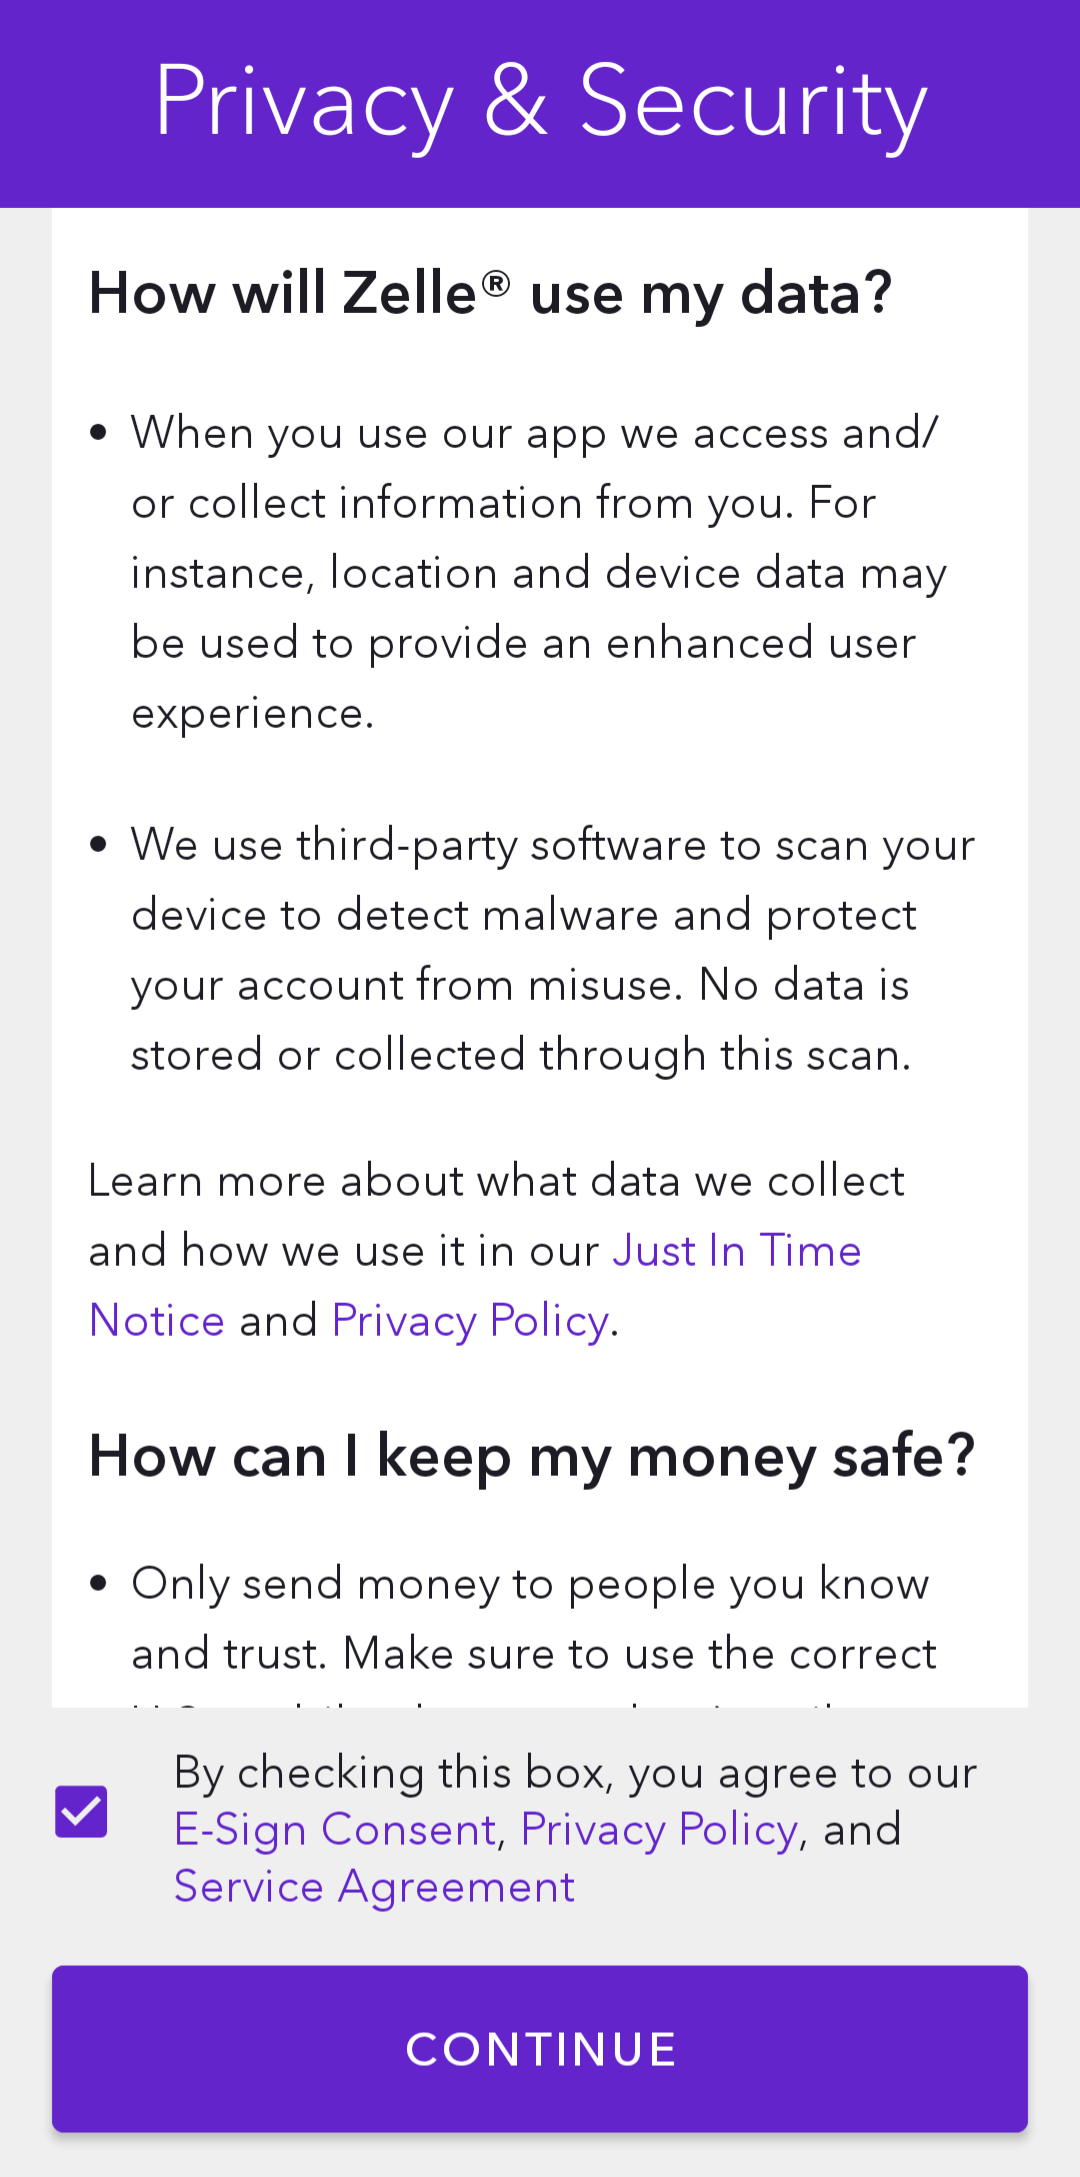 Halaman Privasi & Keamanan di aplikasi Zelle